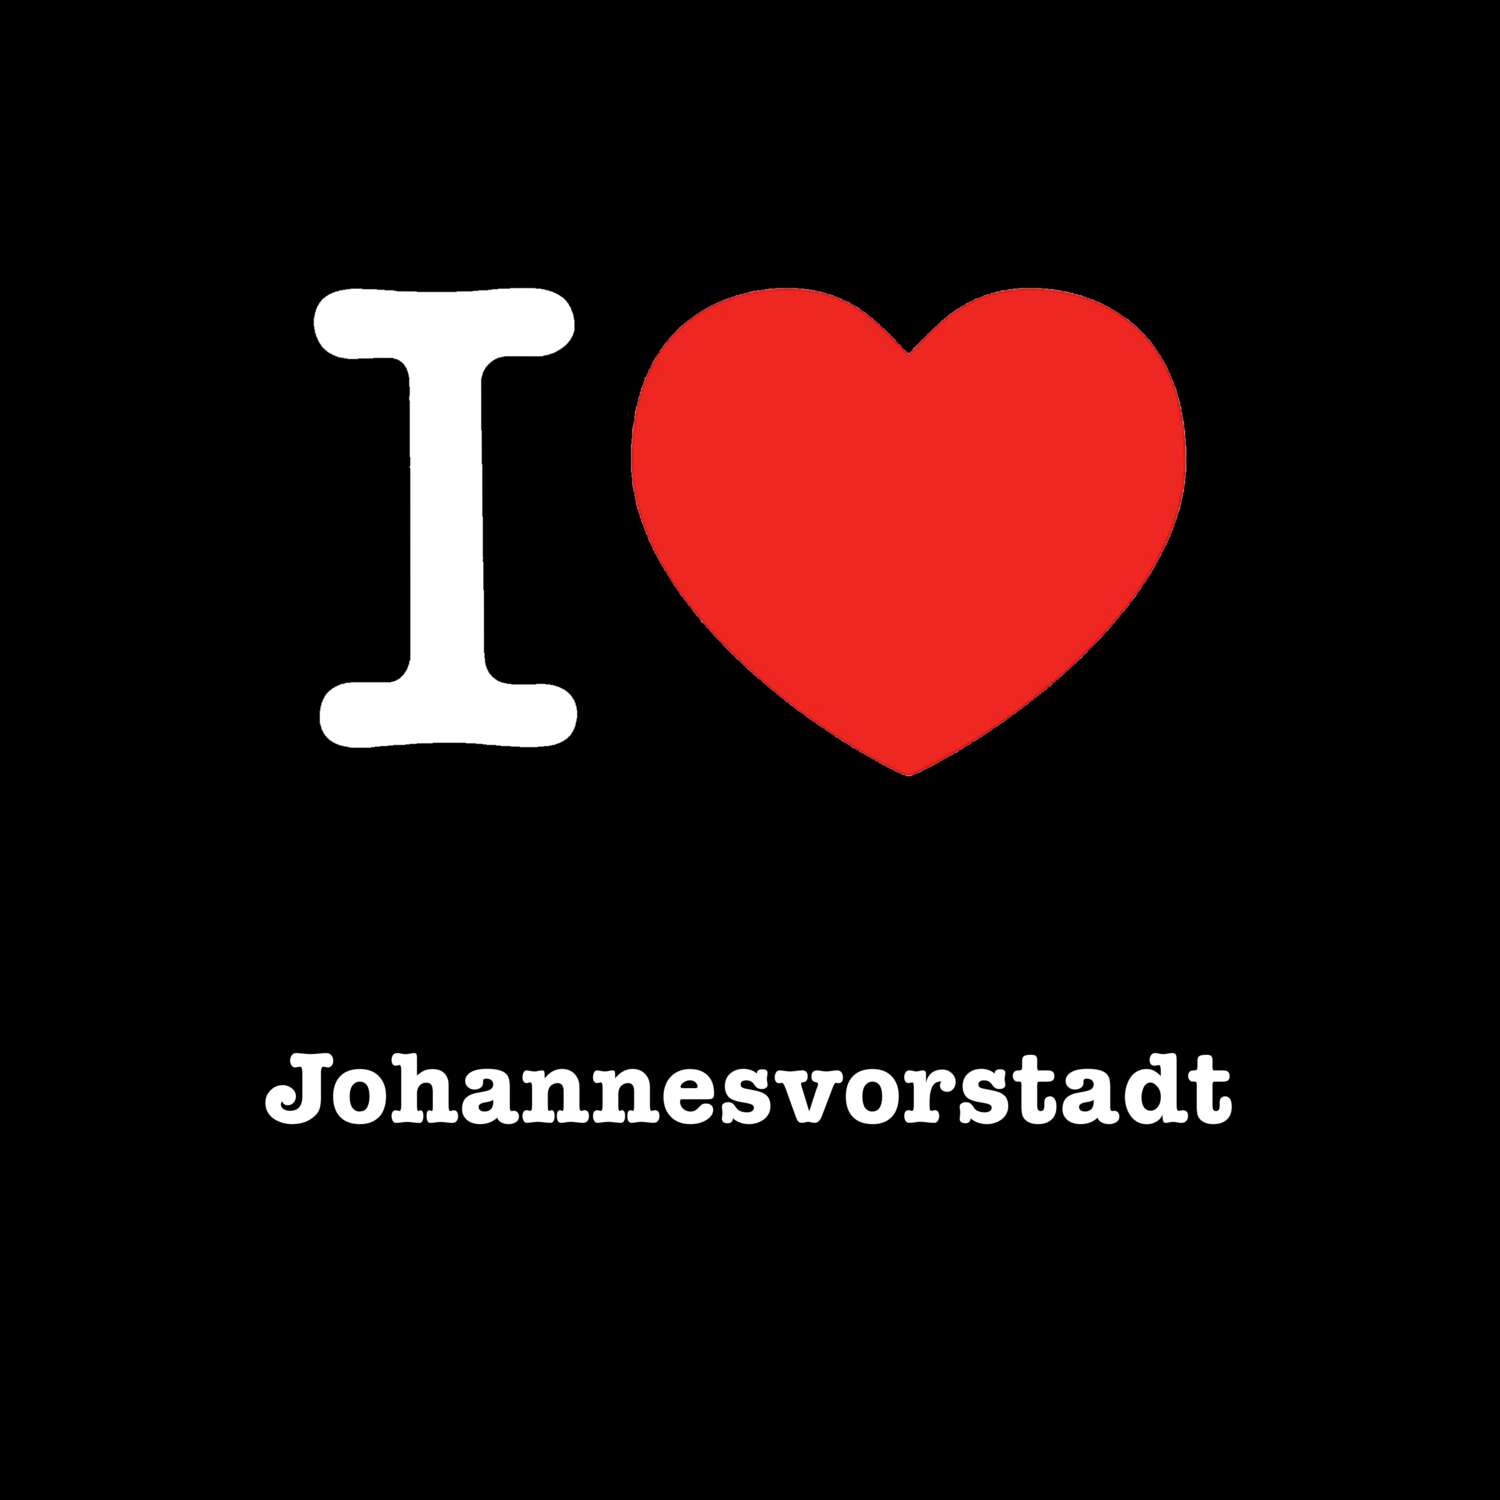 Johannesvorstadt T-Shirt »I love«